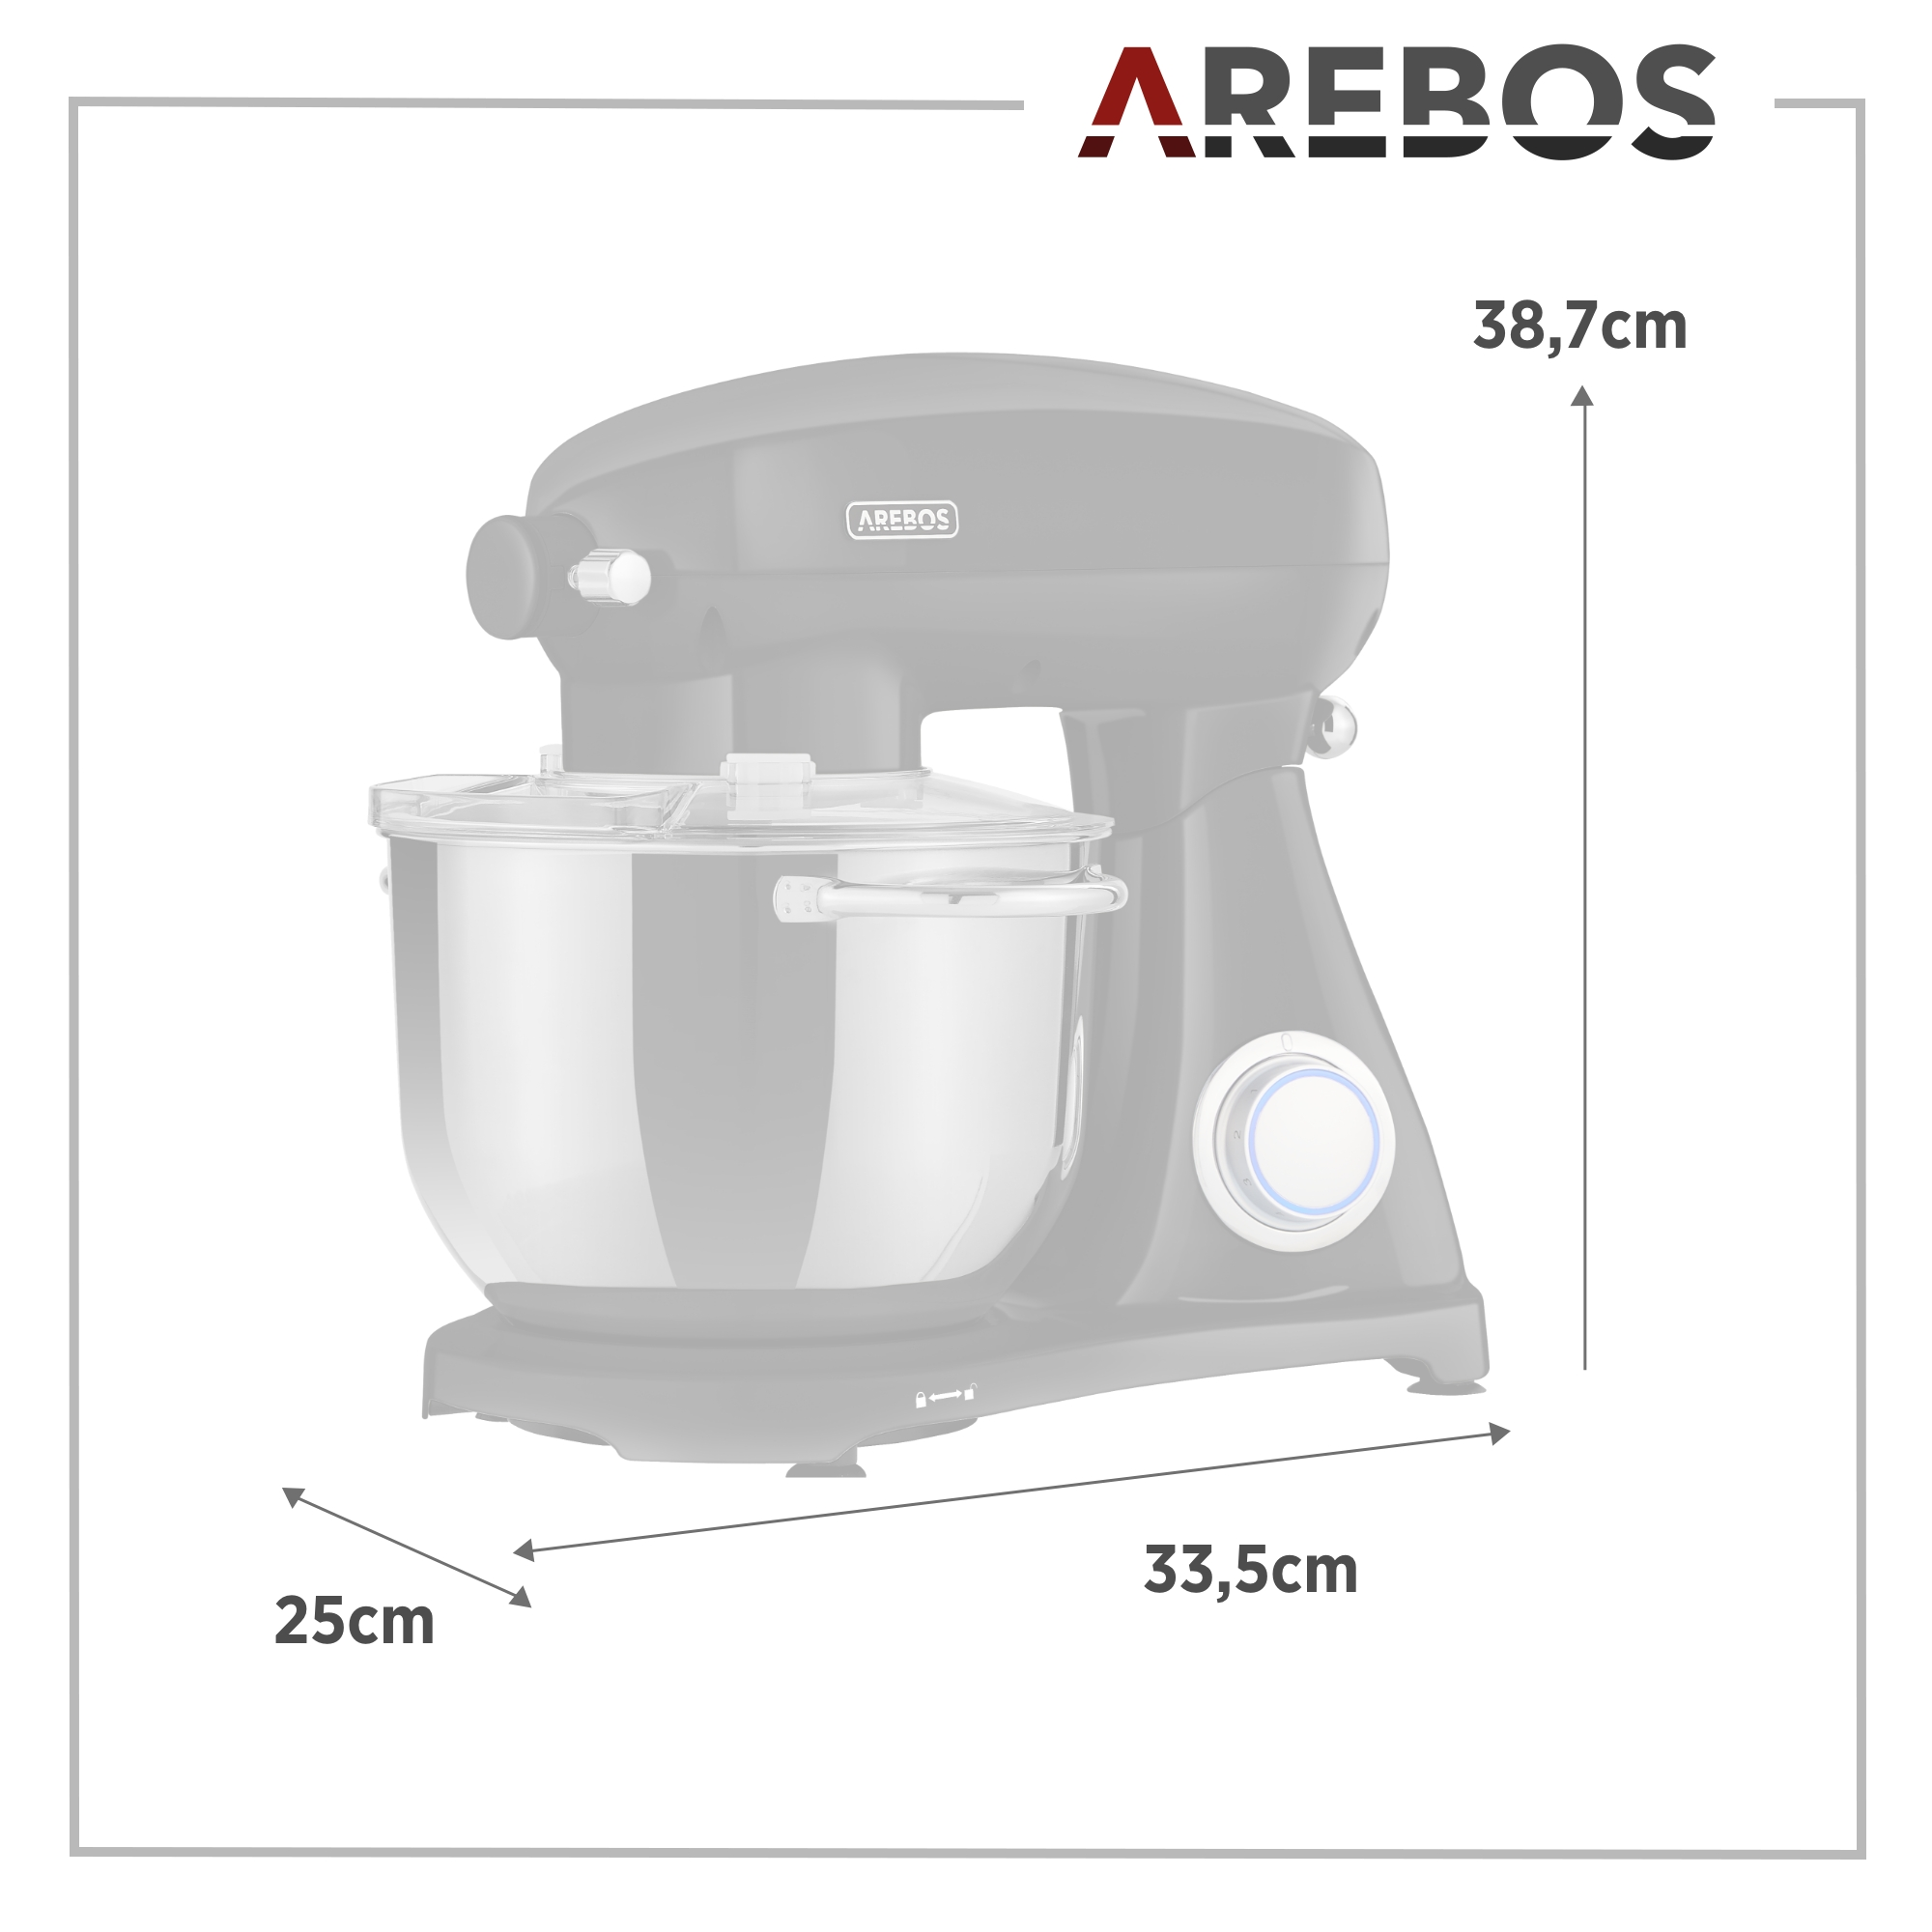 AREBOS 6 1800 Liter, schwarz Speedlevels Küchenmaschine Watt) (Rührschüsselkapazität: 6